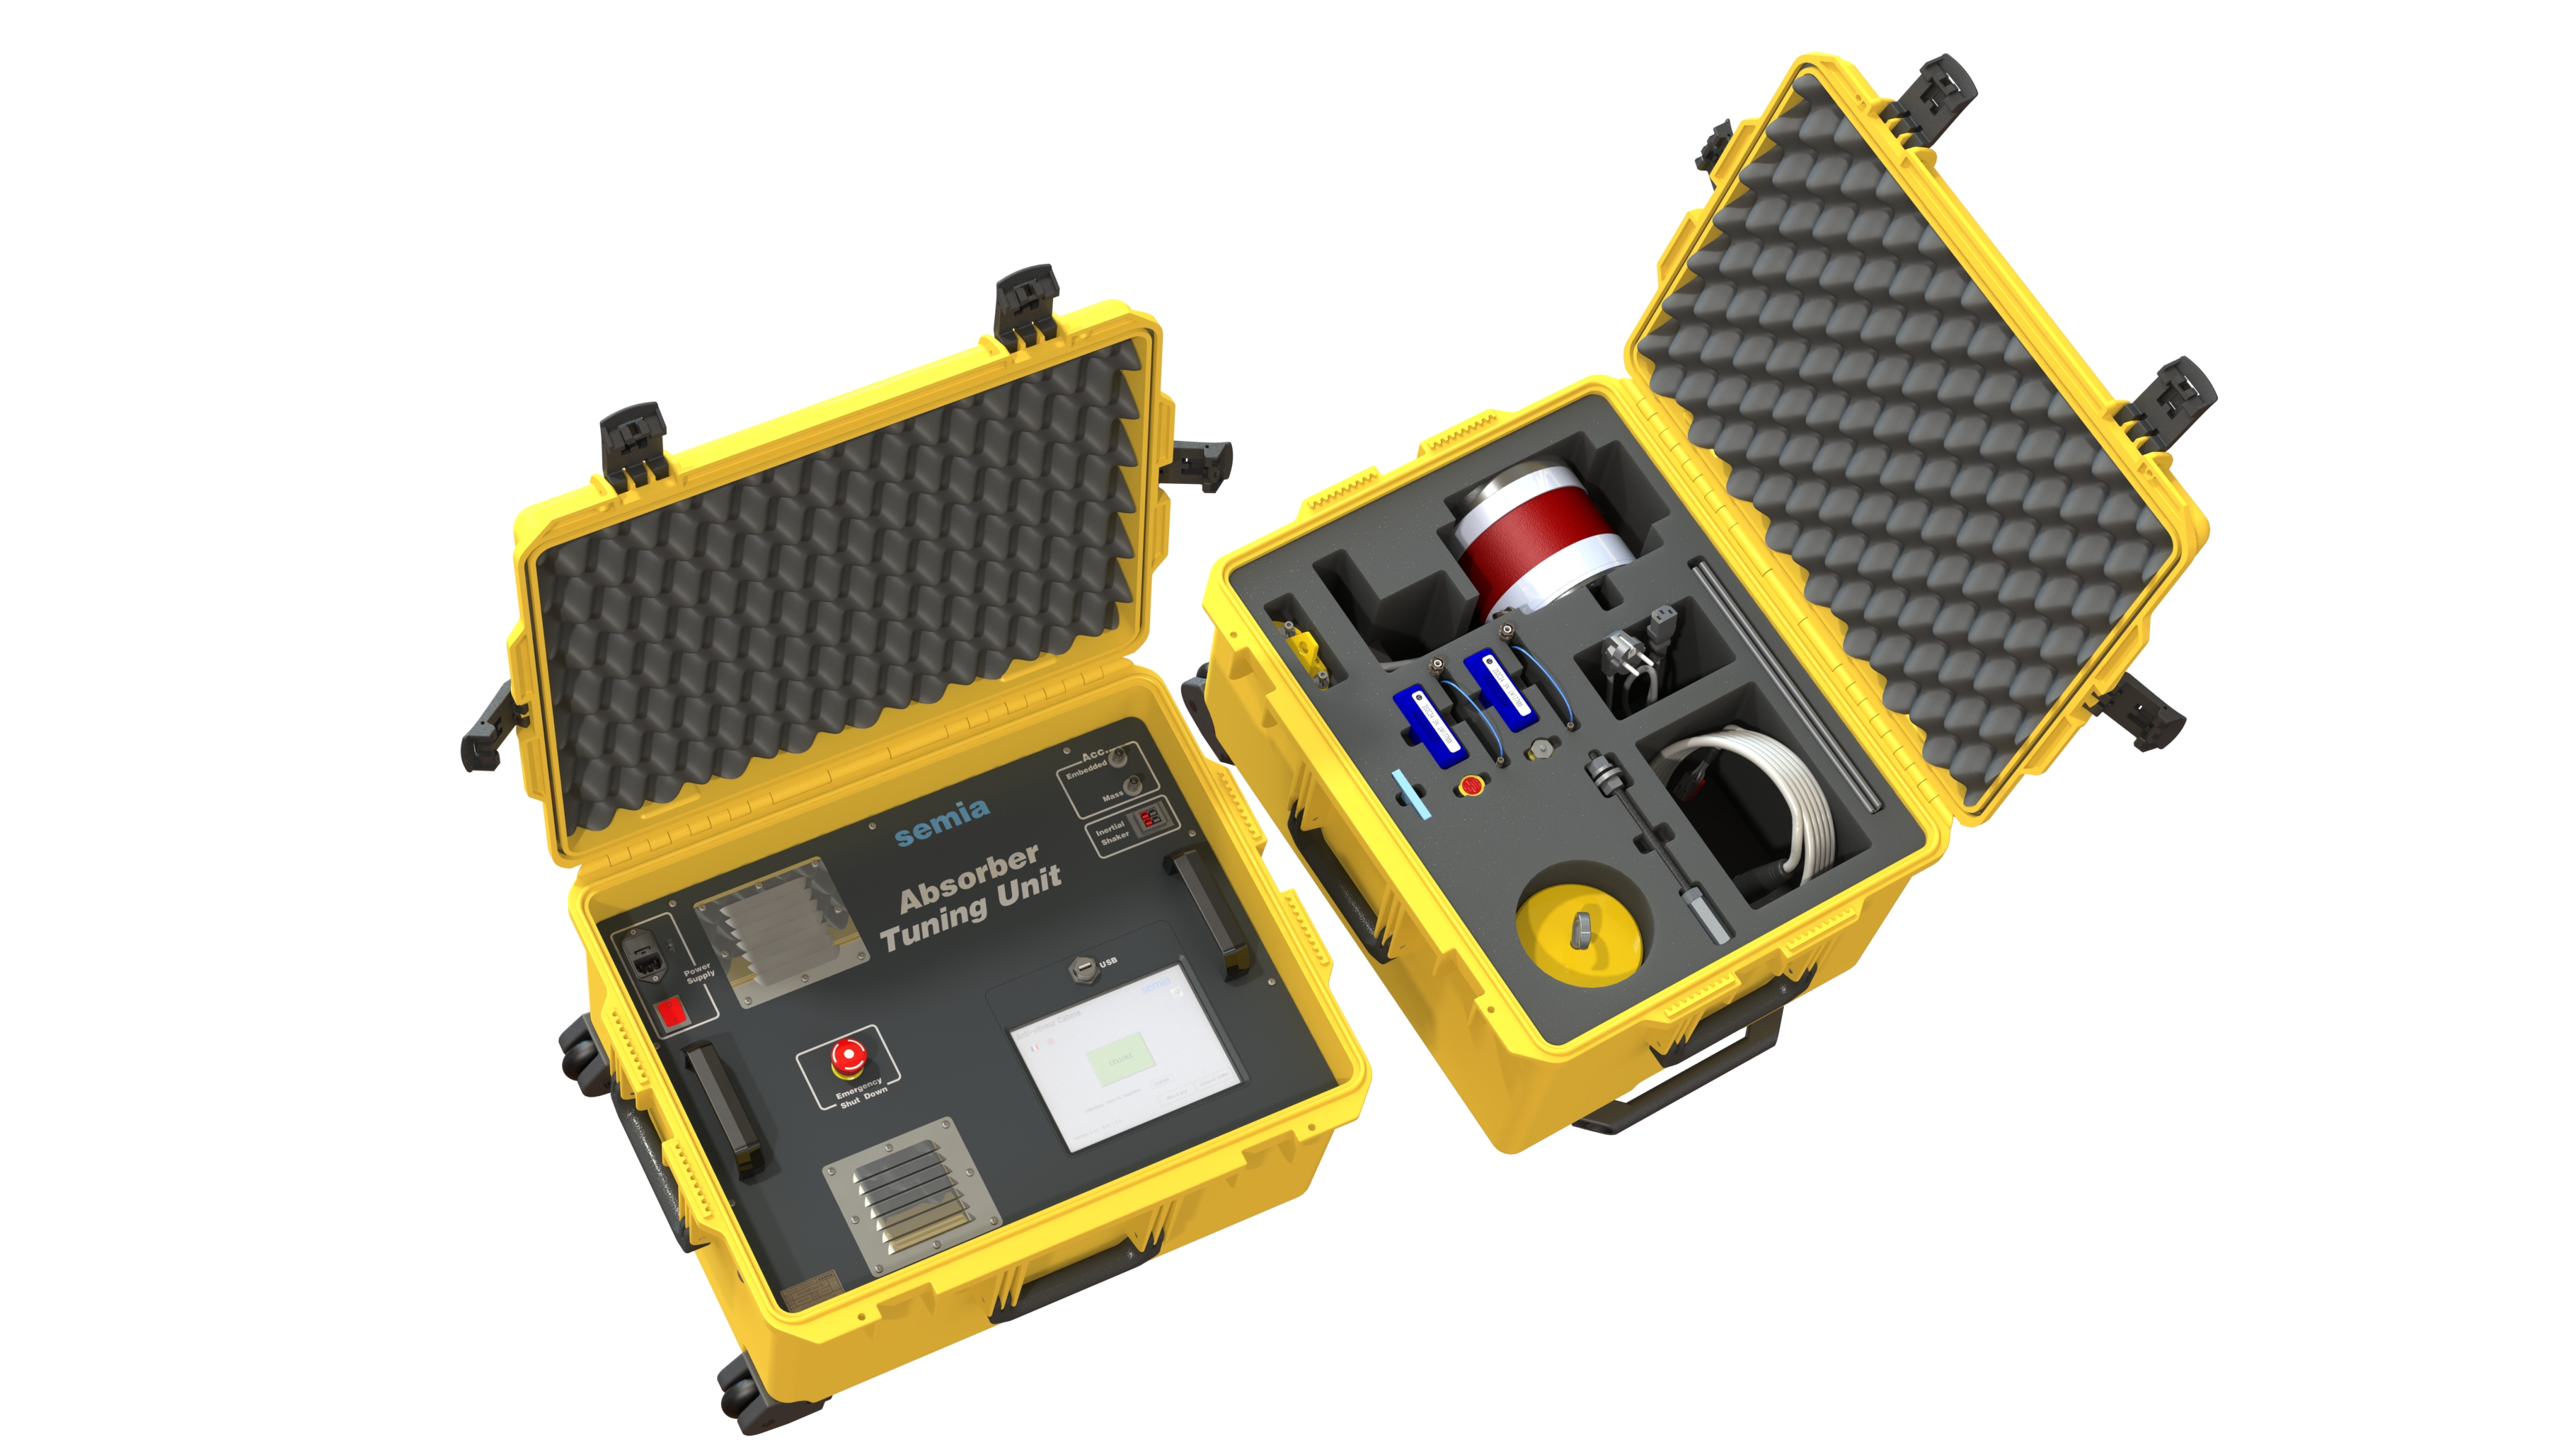 Équipement pour le réglage des anti-vibreurs de cabine - Absorber Tuning Unit_0